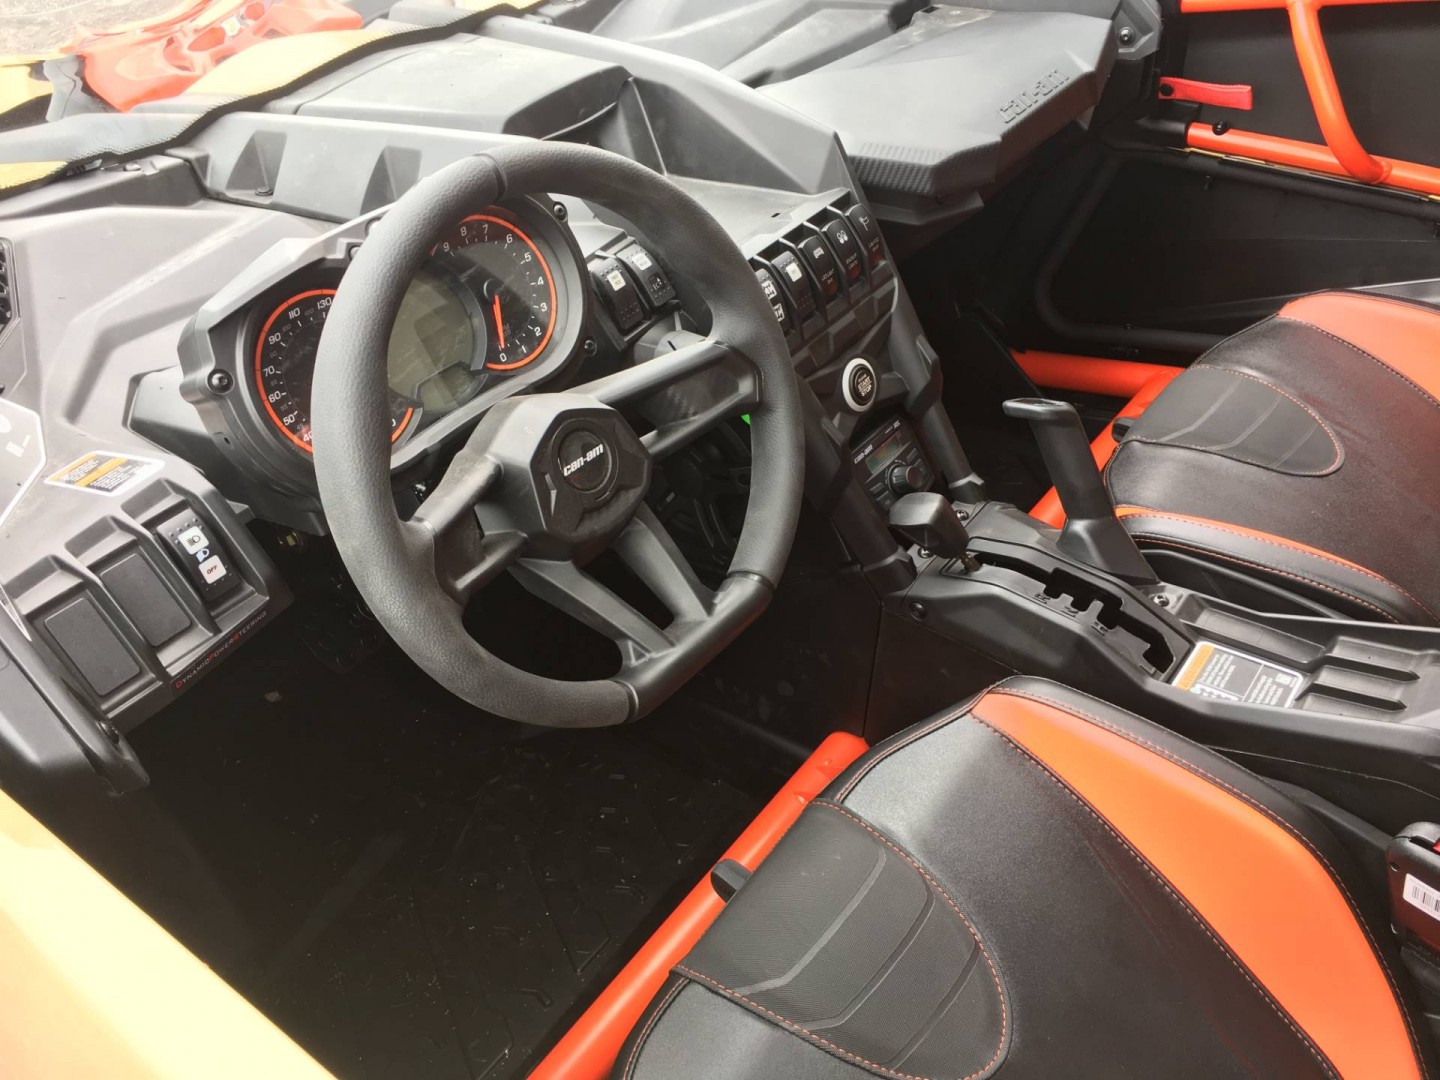 НОВЫЙ BRP Can-Am Maverick X3 MAX XRS Turbo R 2017 года, в наличии во Владив...